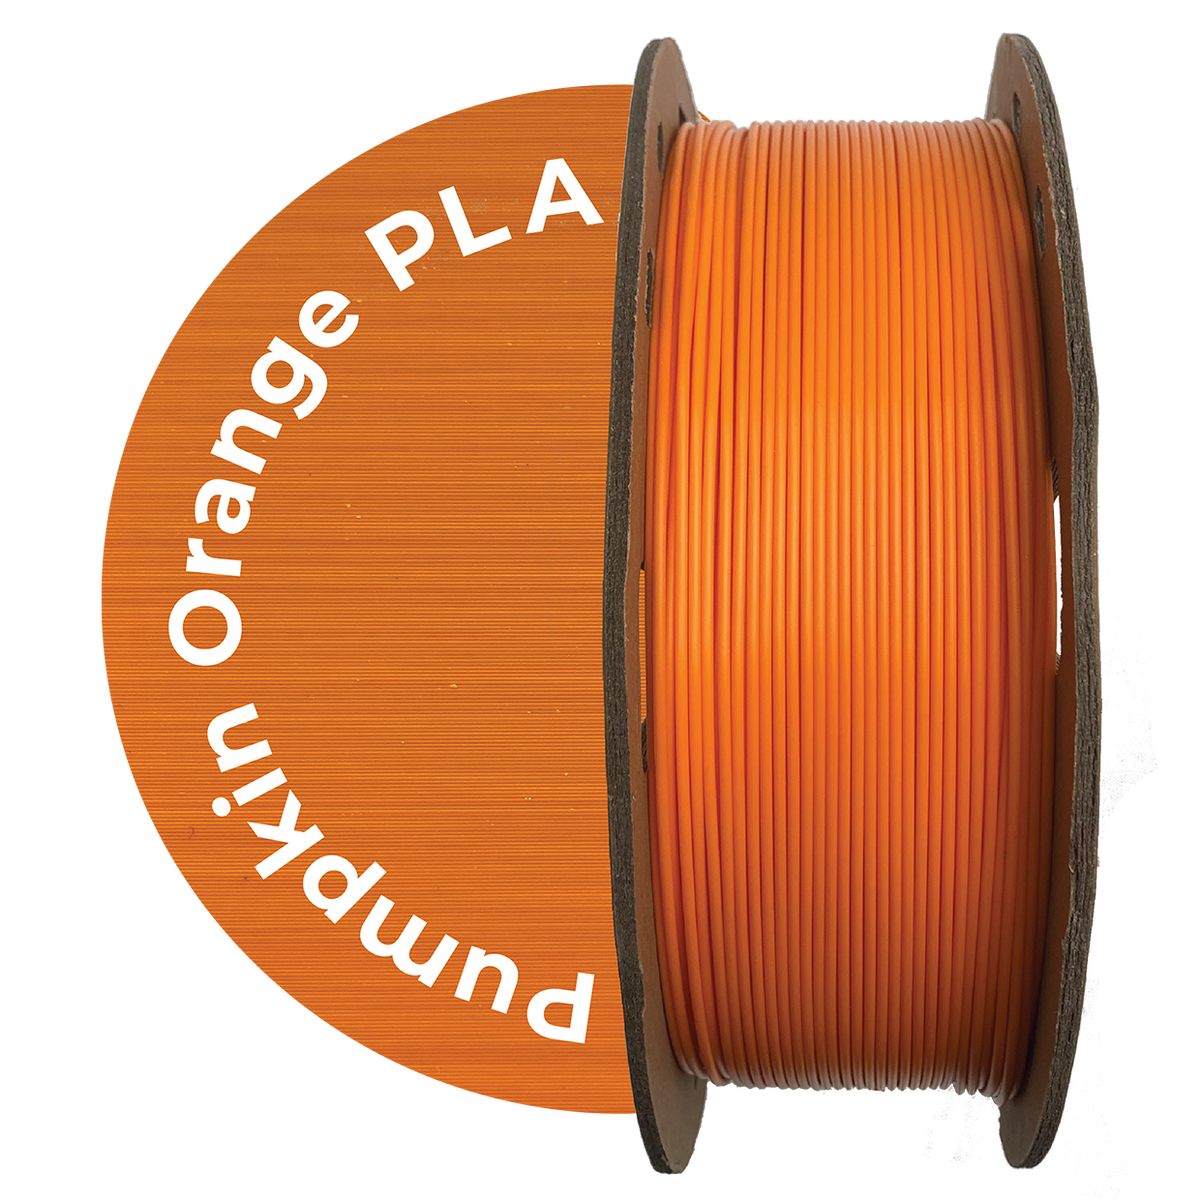 Filament PLA UP constructeur - Orange Ø 1,75 mm 0,5kg